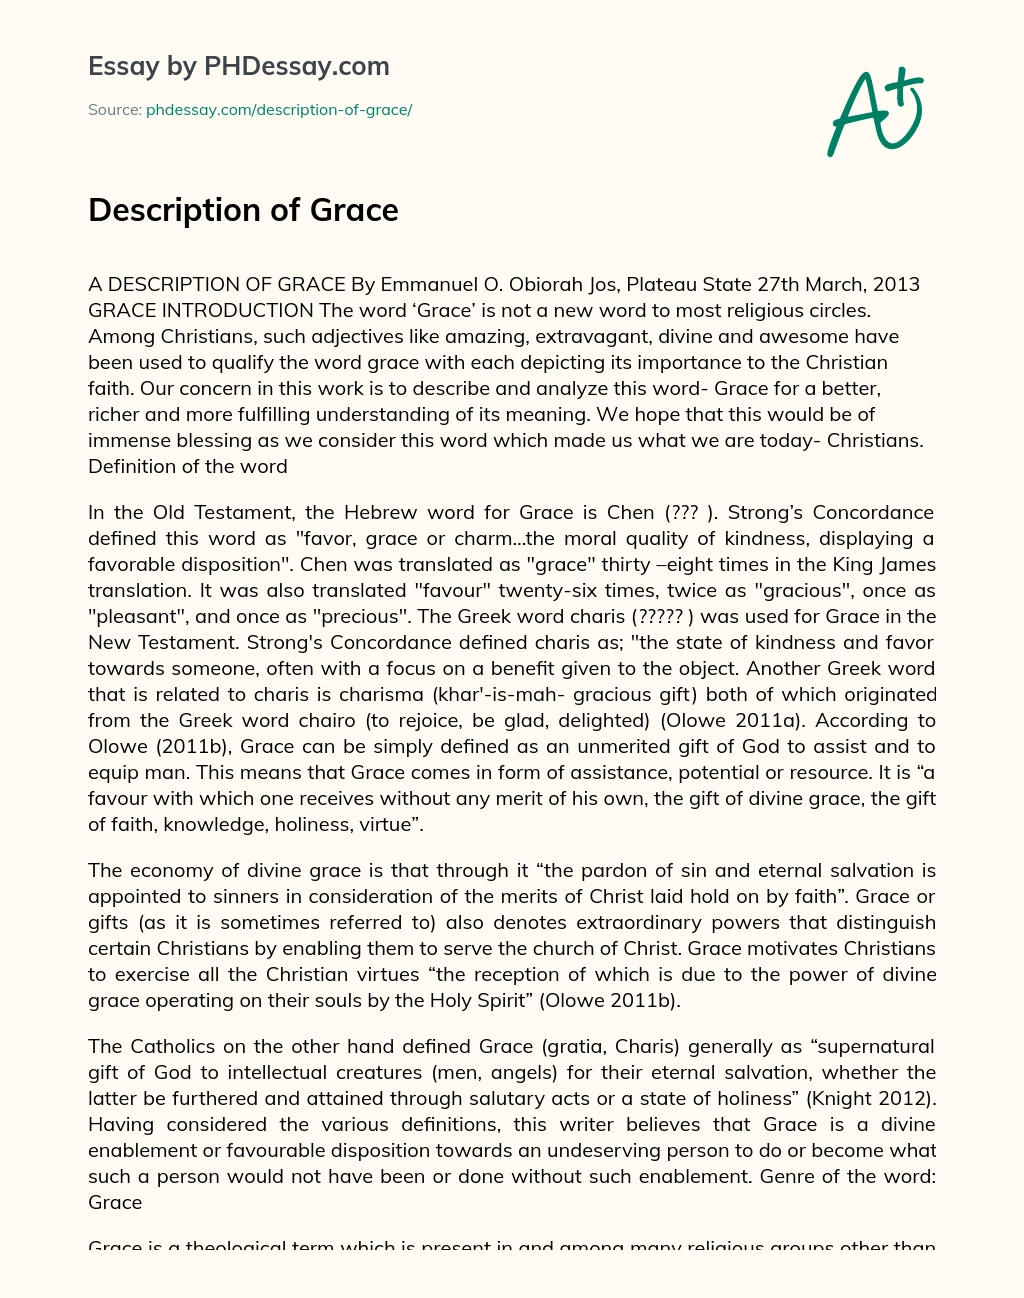 Description of Grace essay